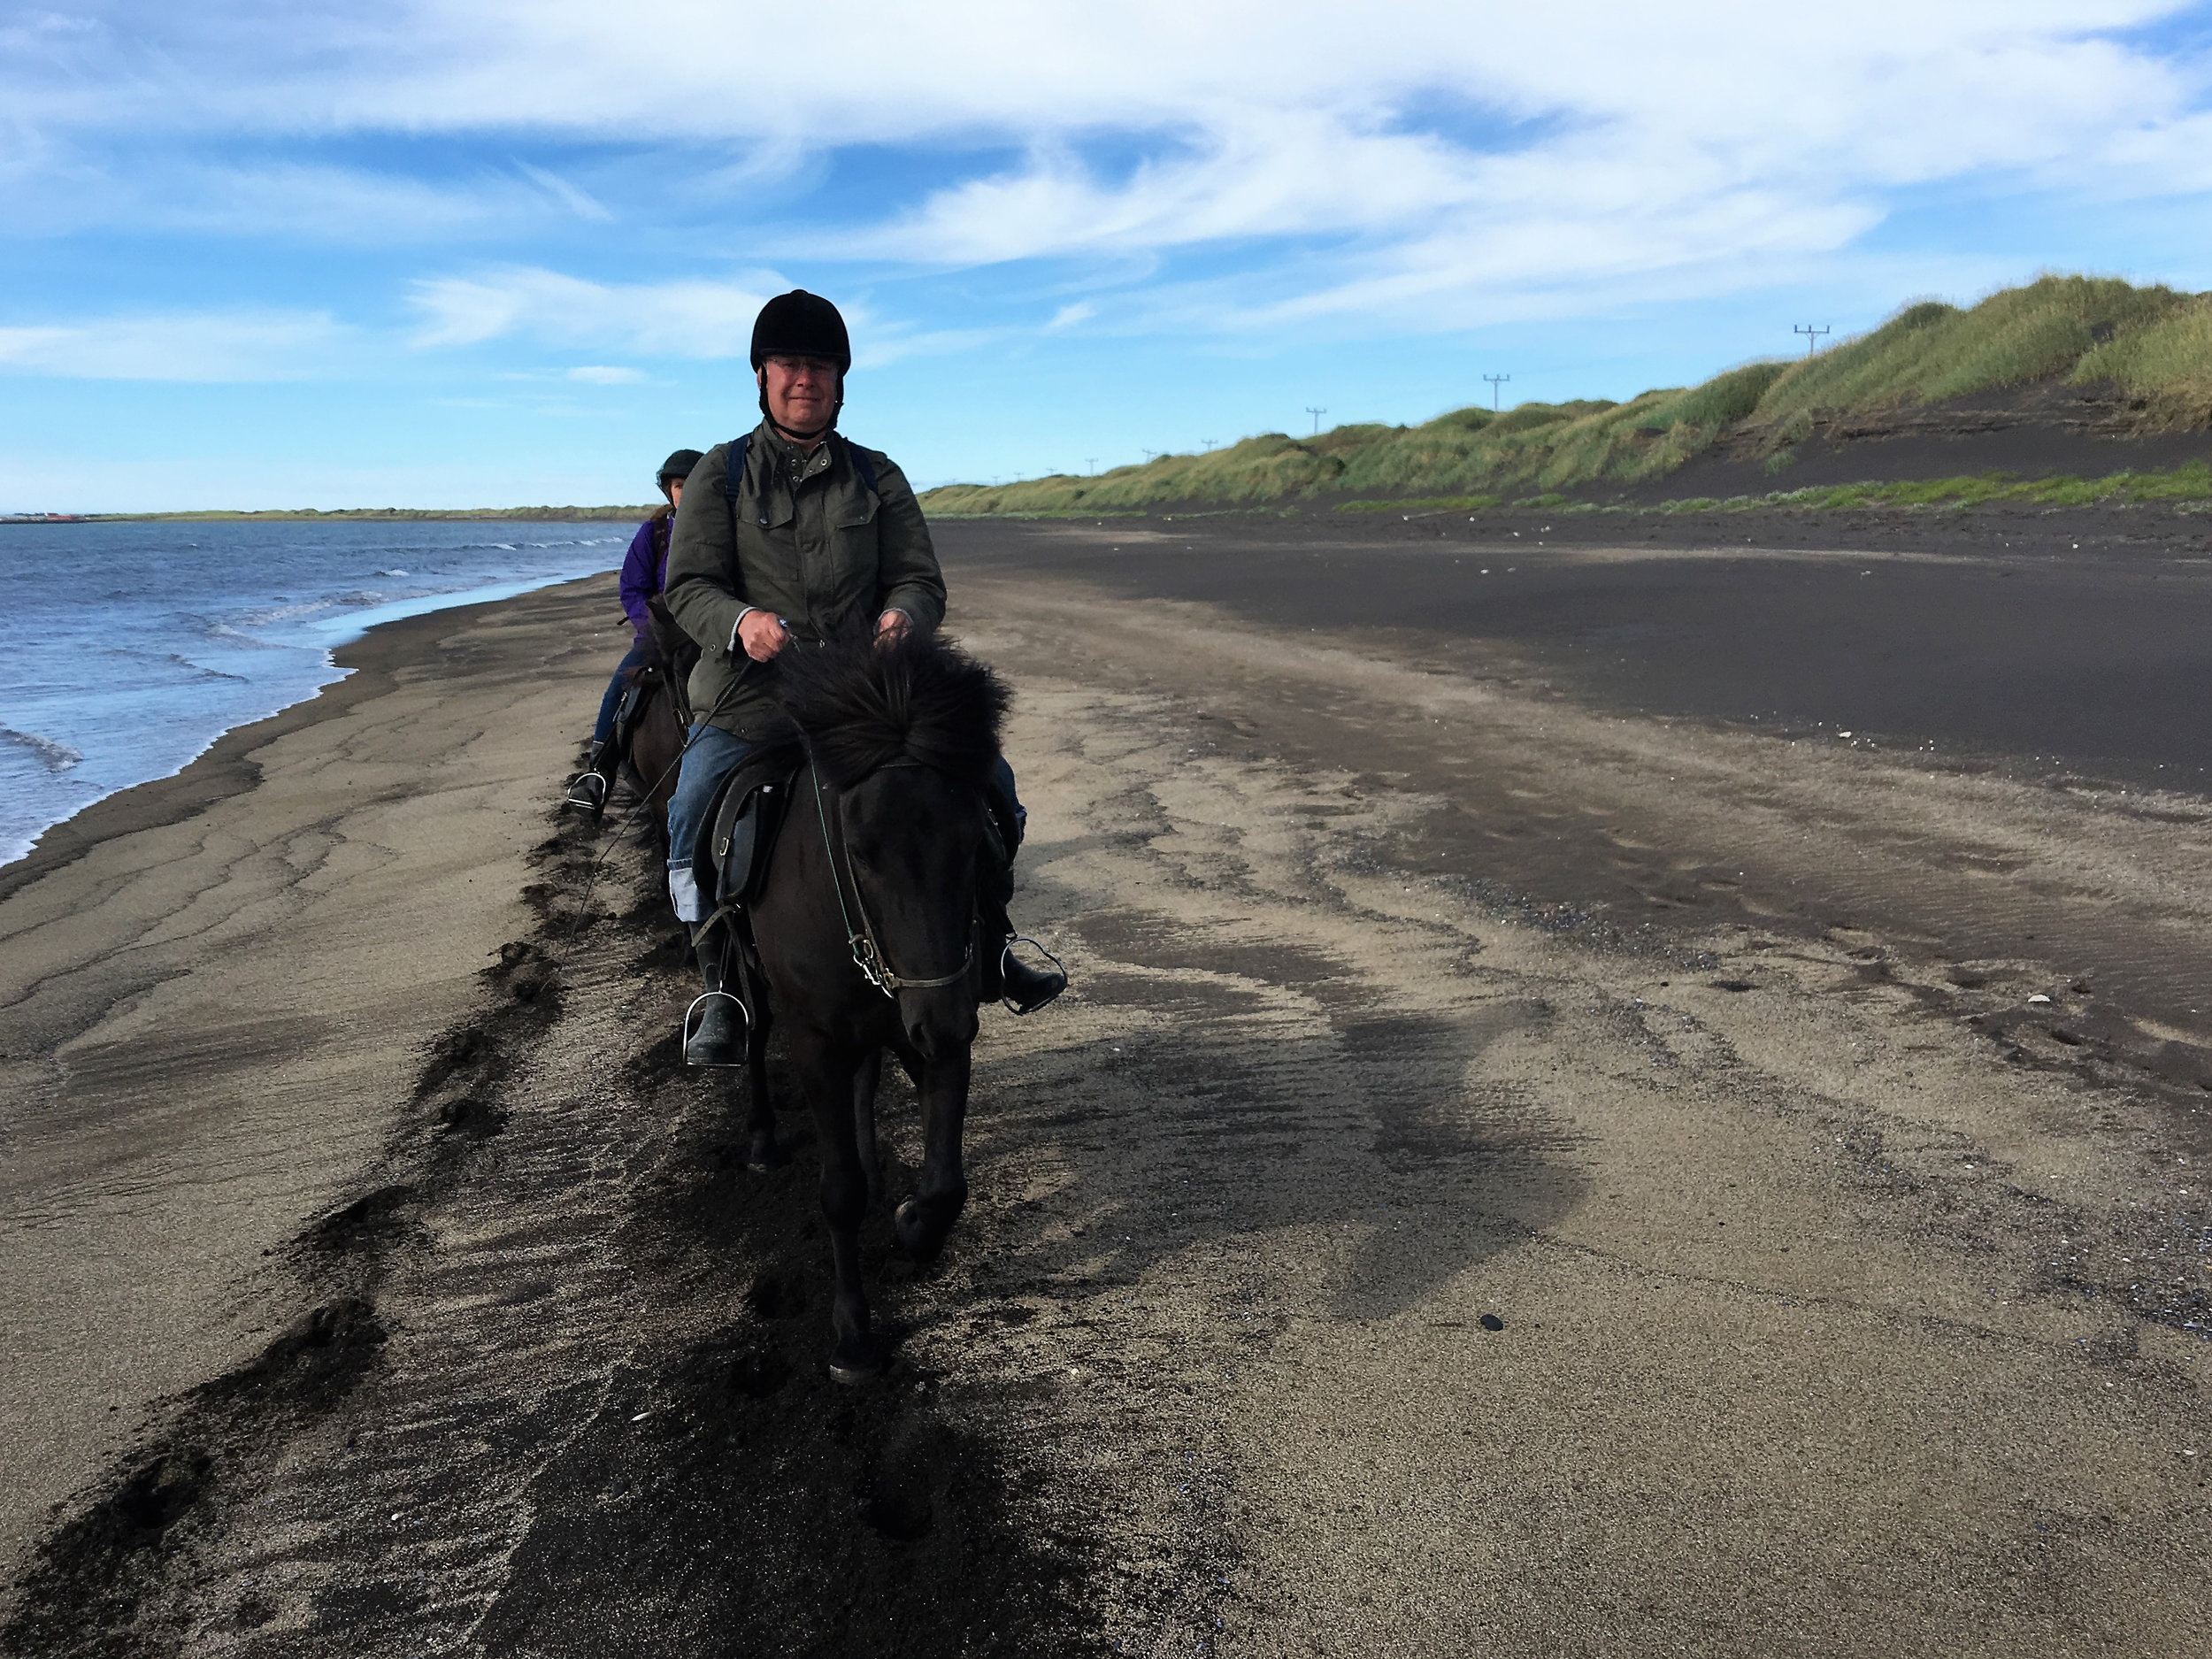 teri_horsebackriding_Iceland_spiritedtable_photo4.jpg